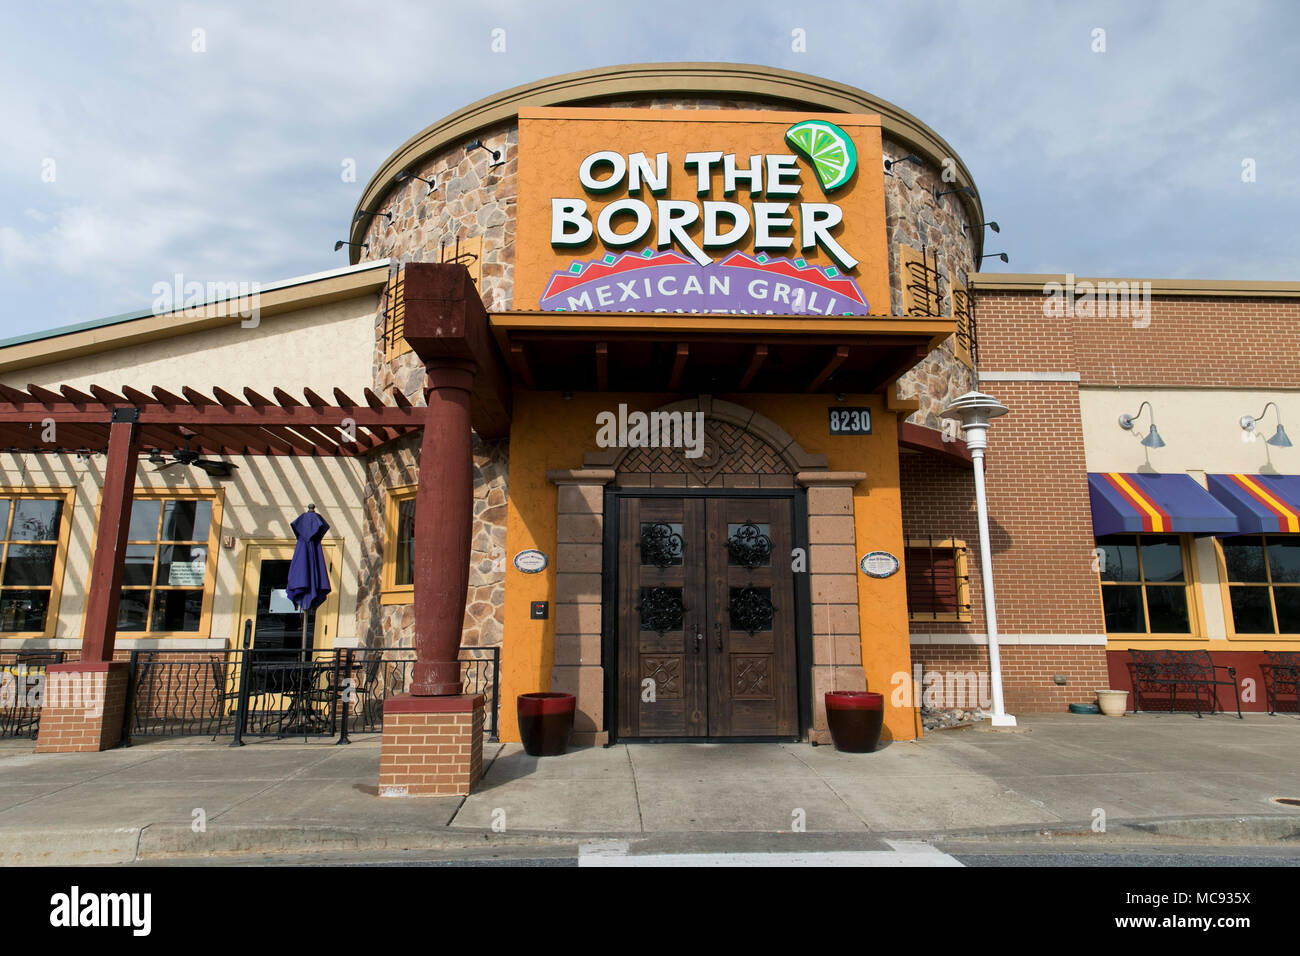 Un logo segno esterno di una sul confine Mexican Grill & Cantina ristorante posizione in Columbia, Maryland il 13 aprile 2018. Foto Stock